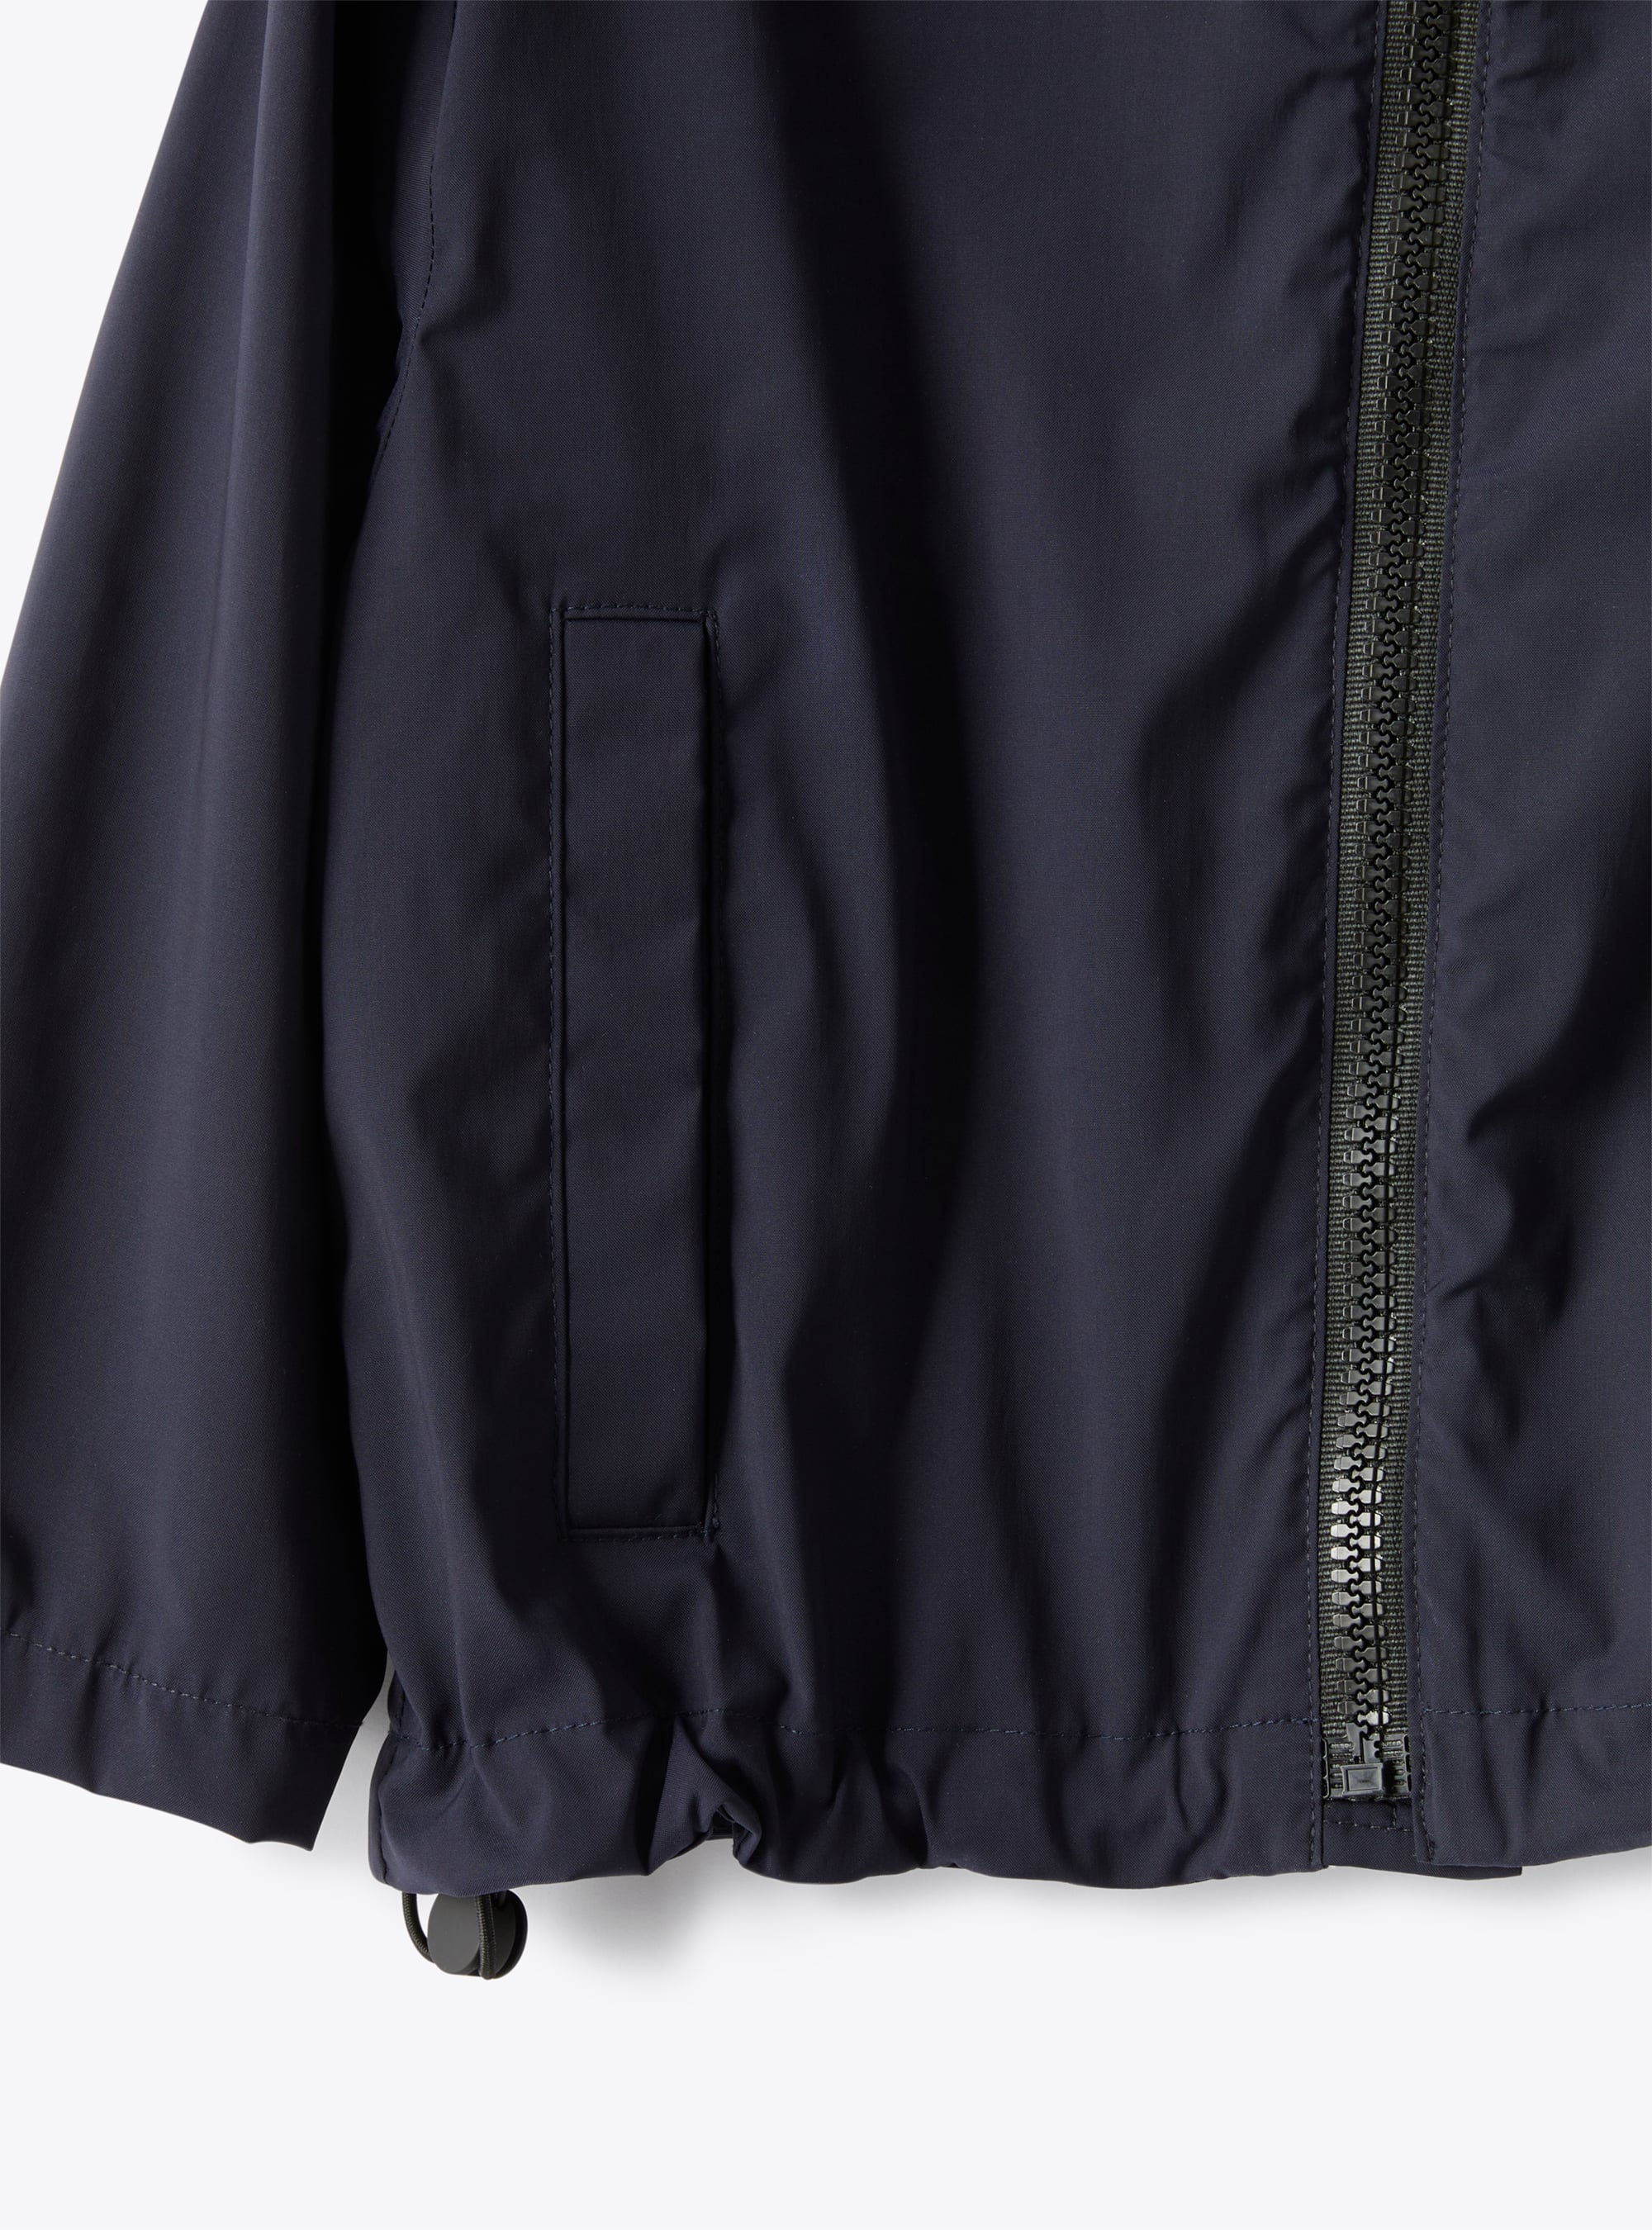 Куртка на молнии, из высокотехнологичной ткани - СИНИЙ | Il Gufo